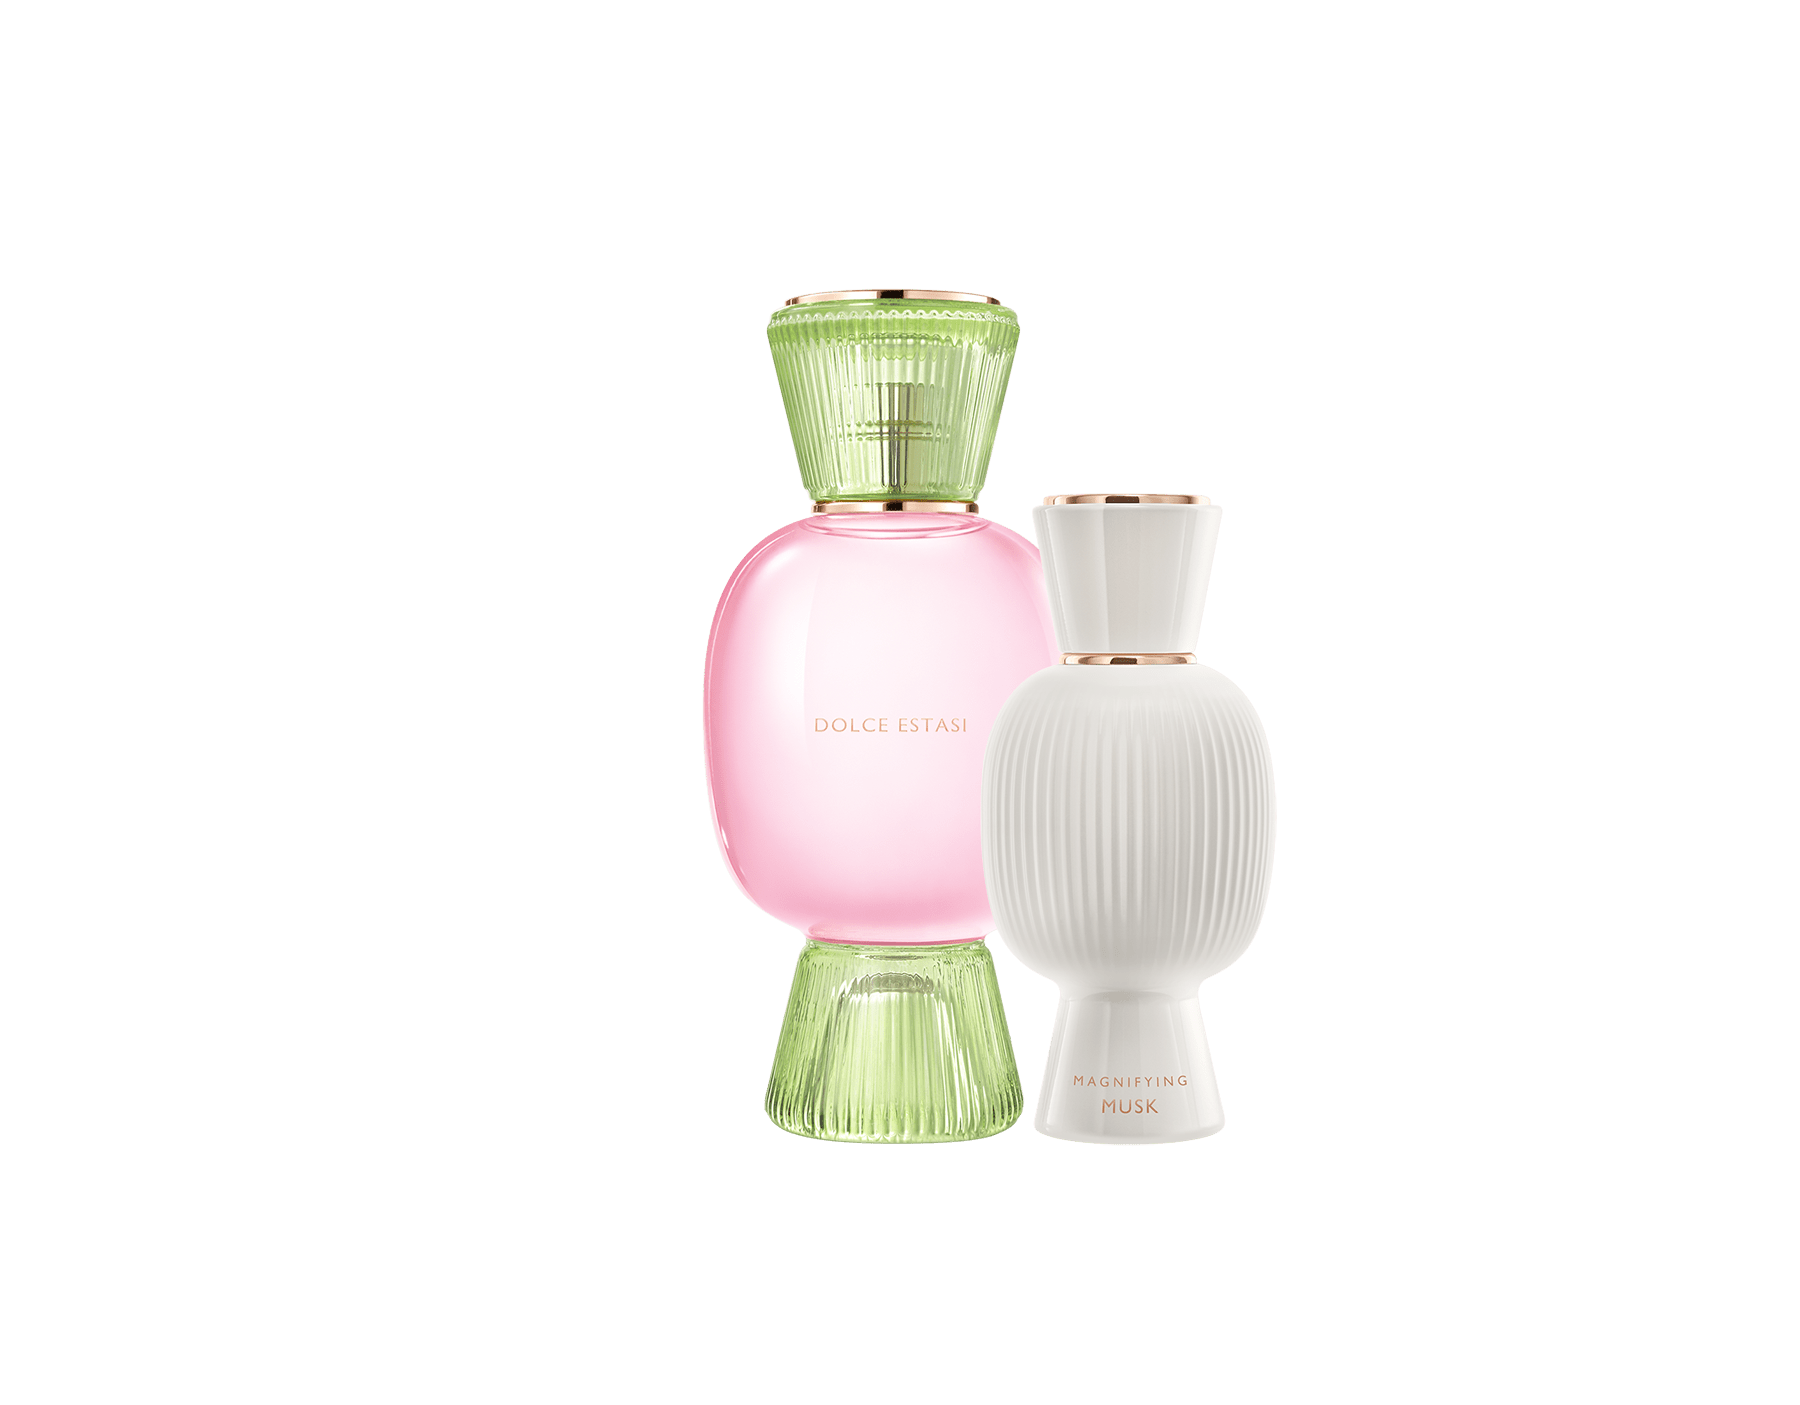 Perfume Set Dolce Estasi And Musk Magnifying Bvlgari